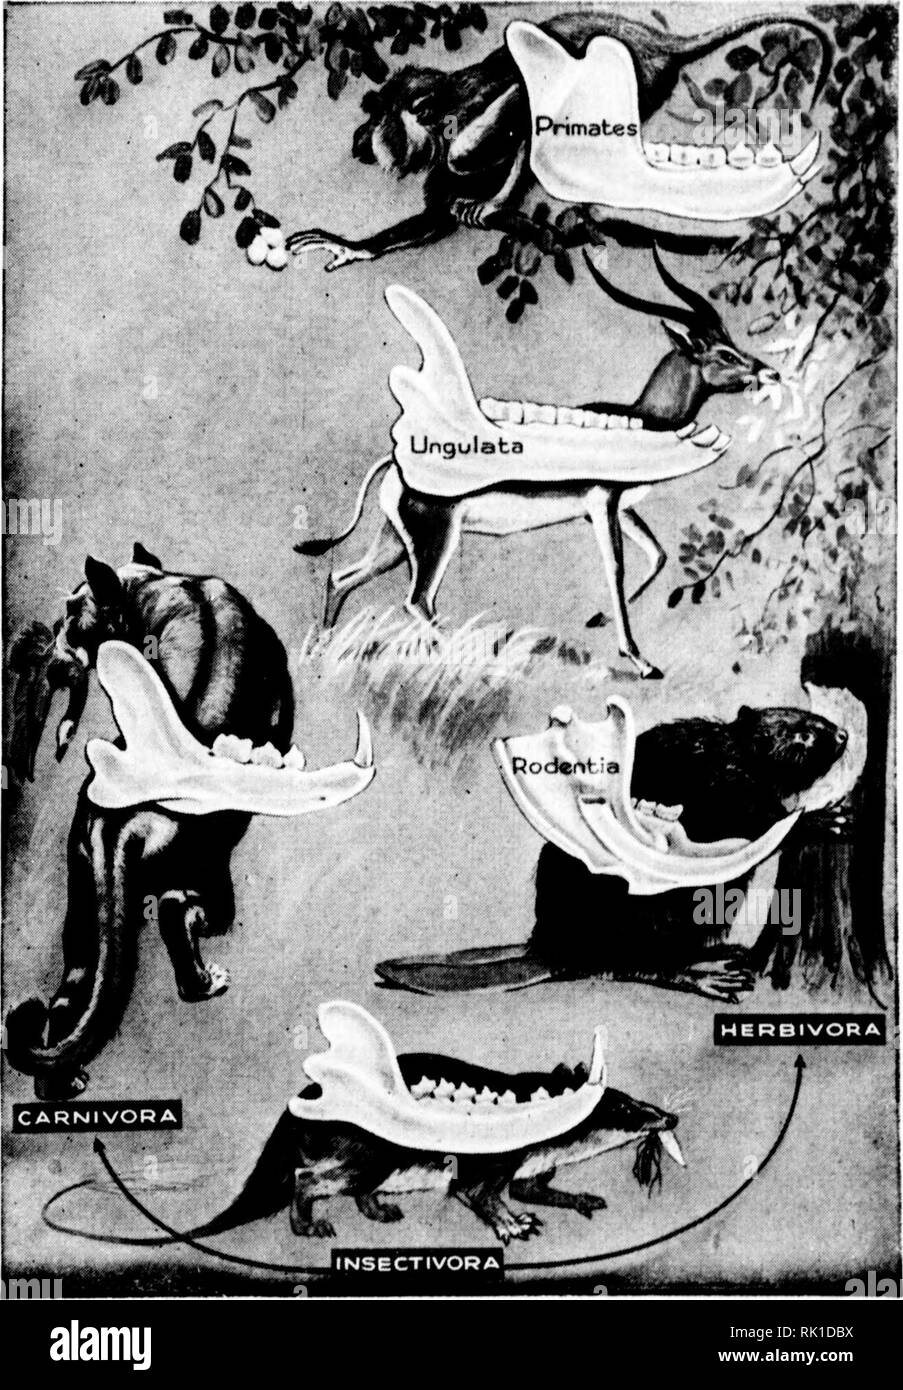 . Arthur and Fritz Kahn Collection 1889-1932. Kahn, Fritz 1888-1968; Kahn, Arthur David 1850-1928; Natural history illustrators; Natural history. Der Baa der Biene (i) Panzer mit Atemöffnungen, (a) Der grösste der Luftsäcke. (3) Das Nervensystem. (4) Der Magen. (5) Das an der Decke hängende Herzrohr. (6) Das Gehirn mit den drei Stirnaugen und den beiden grossen Neuaugen. (7) Der Stechapparat. (8) Der Geschlechtsapparat So künstlerisch und originell, So plastisch und lebendig, So dramatisch und liebevoll sind die Bilder des Werkes gestaltet, die zum grössten Teil nach eigenen Entwürfen des Verf Stock Photo